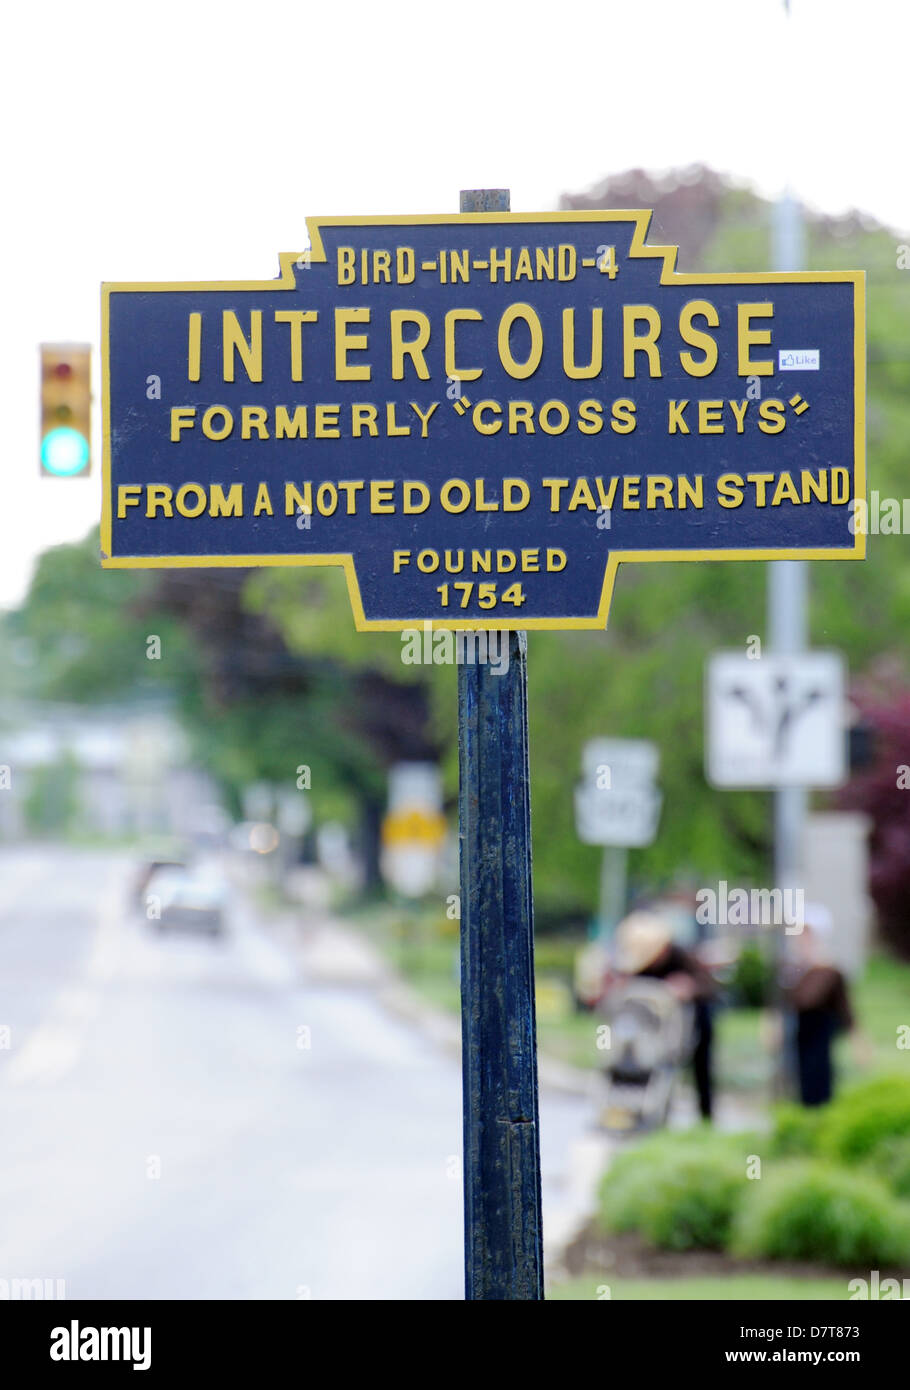 Intercourse Pennsylvania welcome sign for city,Intercourse Pennsylvania, Intercourse 1754, Intercourse city in Pennsylvania, Stock Photo